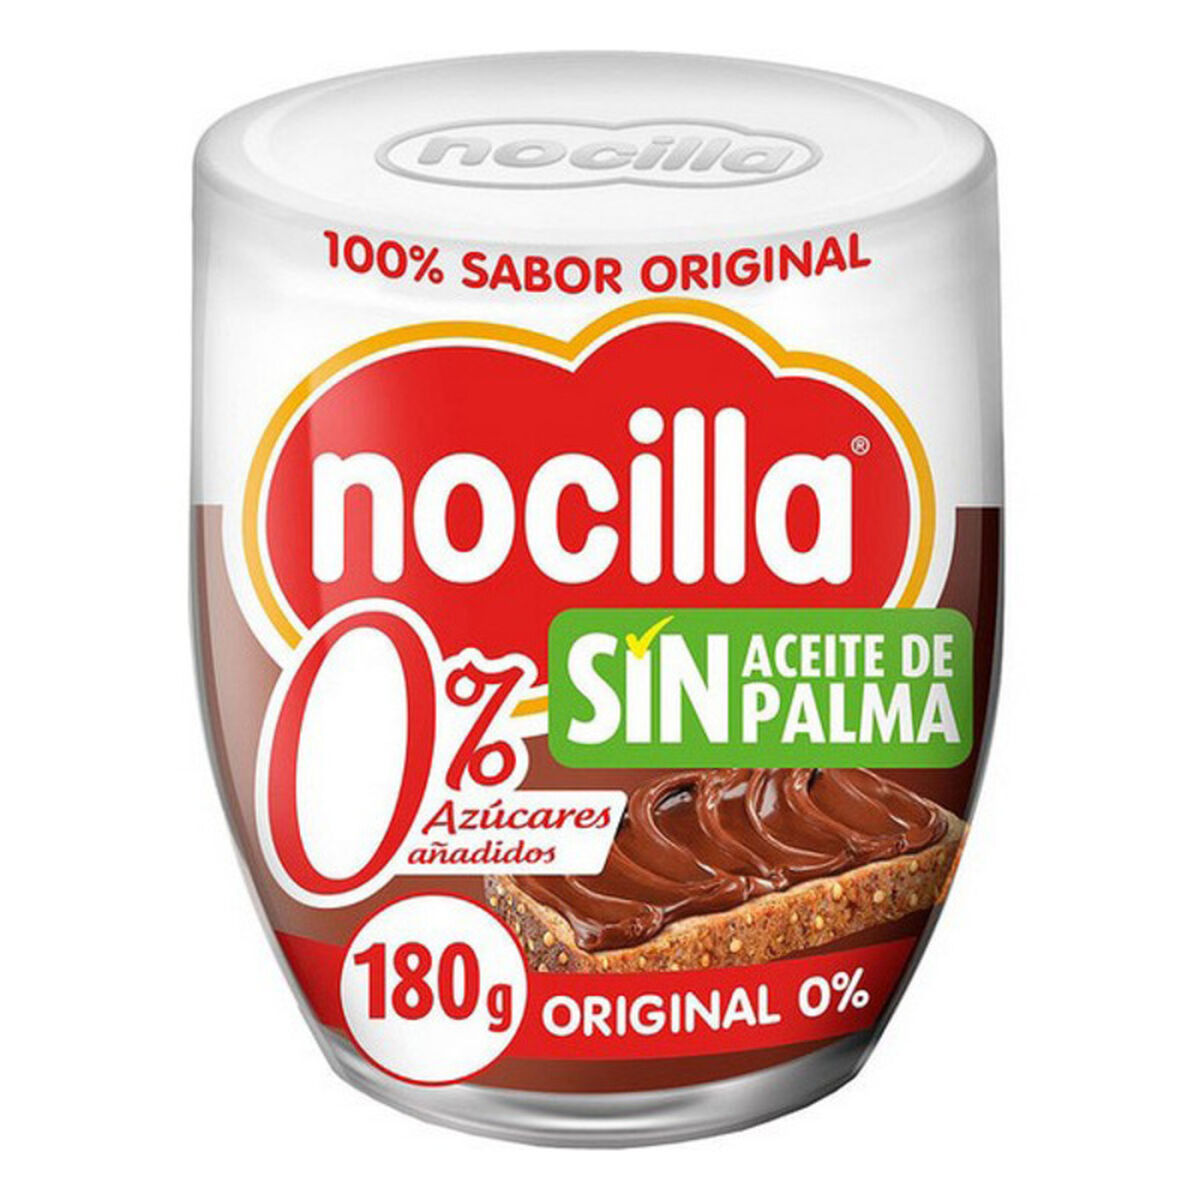 Crema spalmabile al Cioccolato Nocilla (180 g)